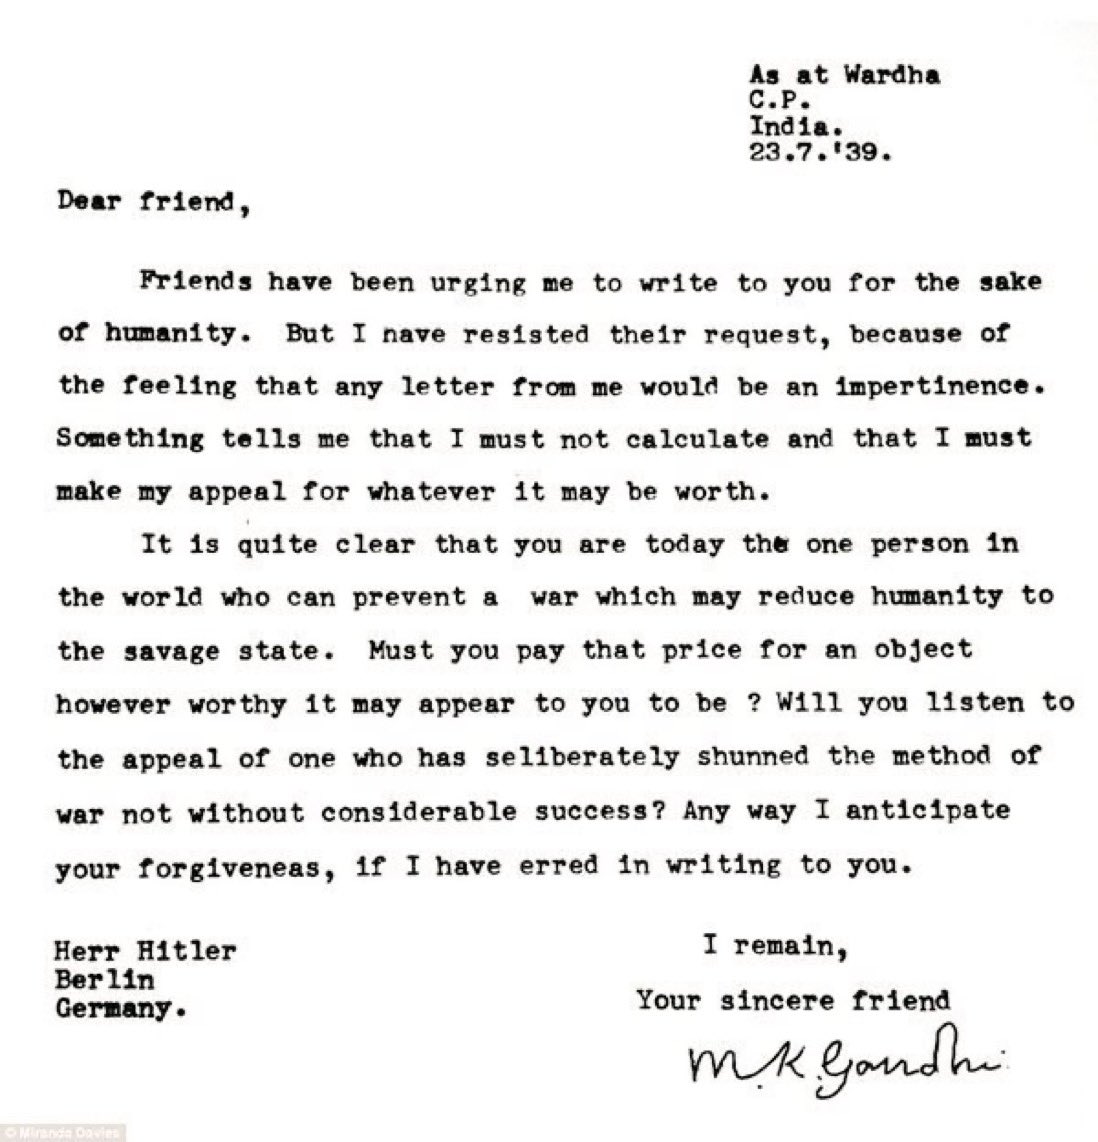 1939 :: Mahatma Gandhi's Letter to Adolf Hitler to Prevent World War II